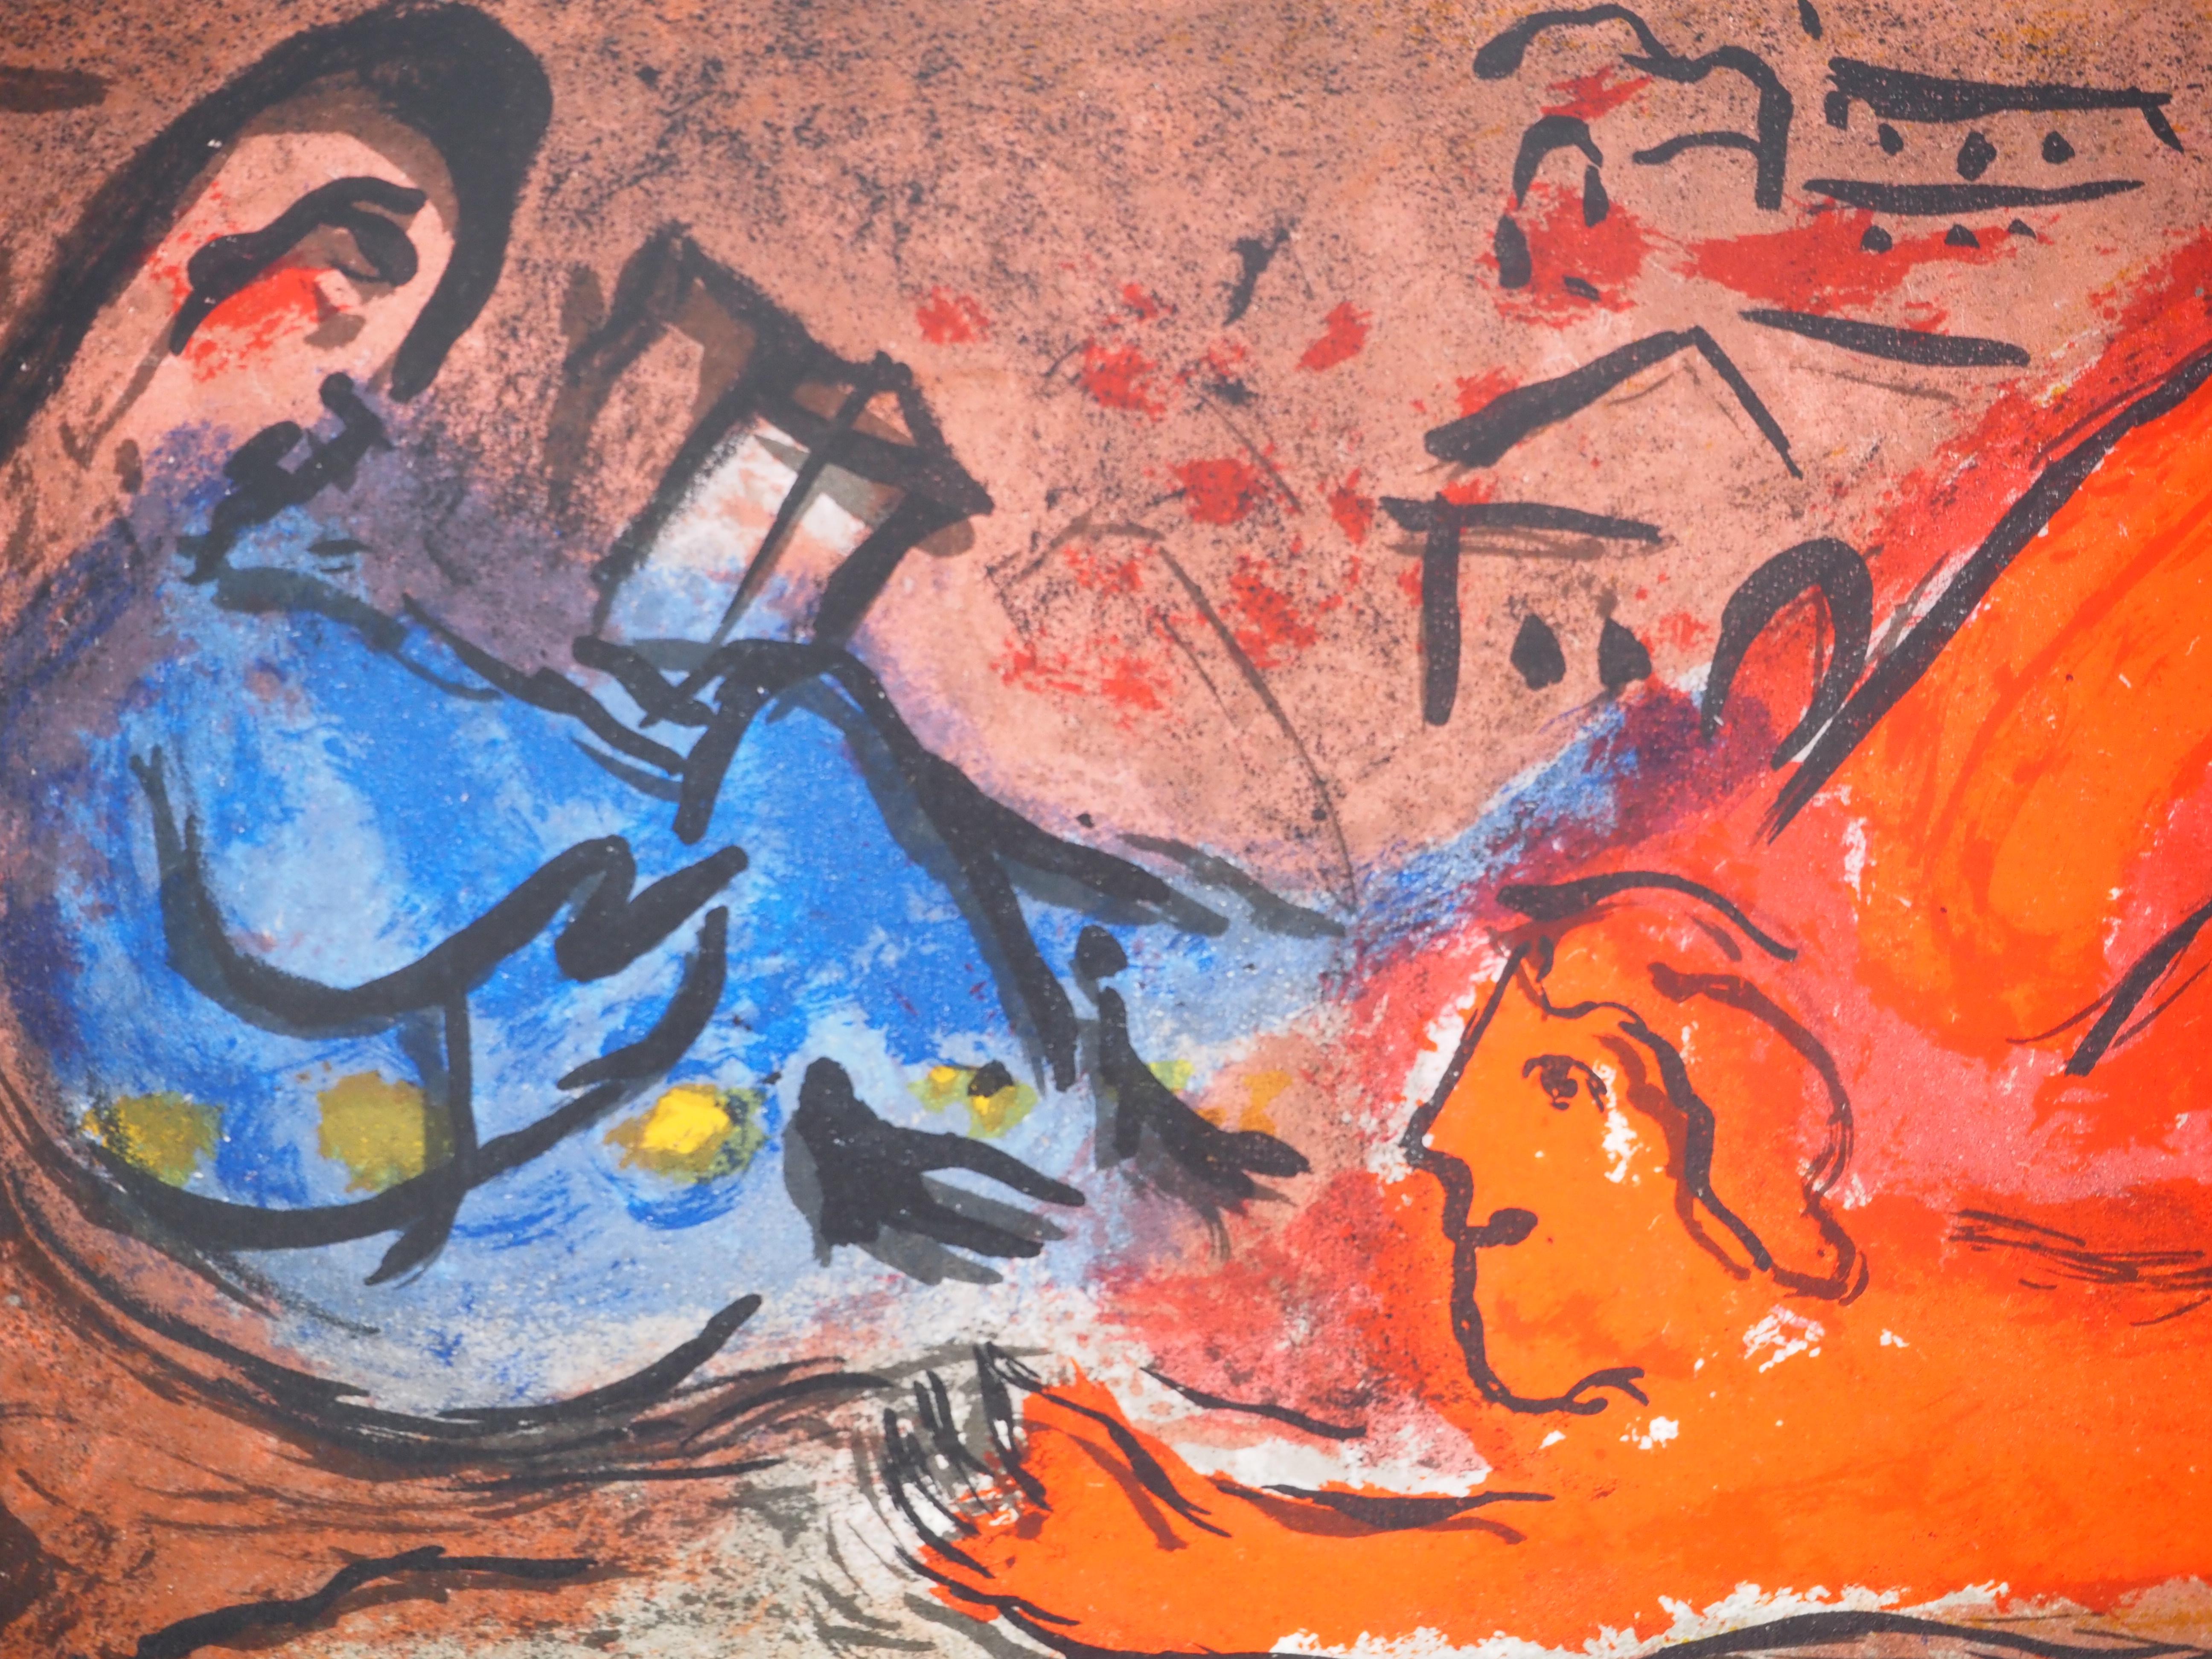 Marc Chagall (1887-1985) 
La Bible, David et Bethsabée amoureux

Lithographie originale (Atelier Mourlot) 
Sur papier 37 x 26.5 cm (c. 14.5 x 10.2 in)
Une deuxième illustration au dos, voir photo n°6 (Mourlot n°135)

RÉFÉRENCE : 
Catalogue raisonné